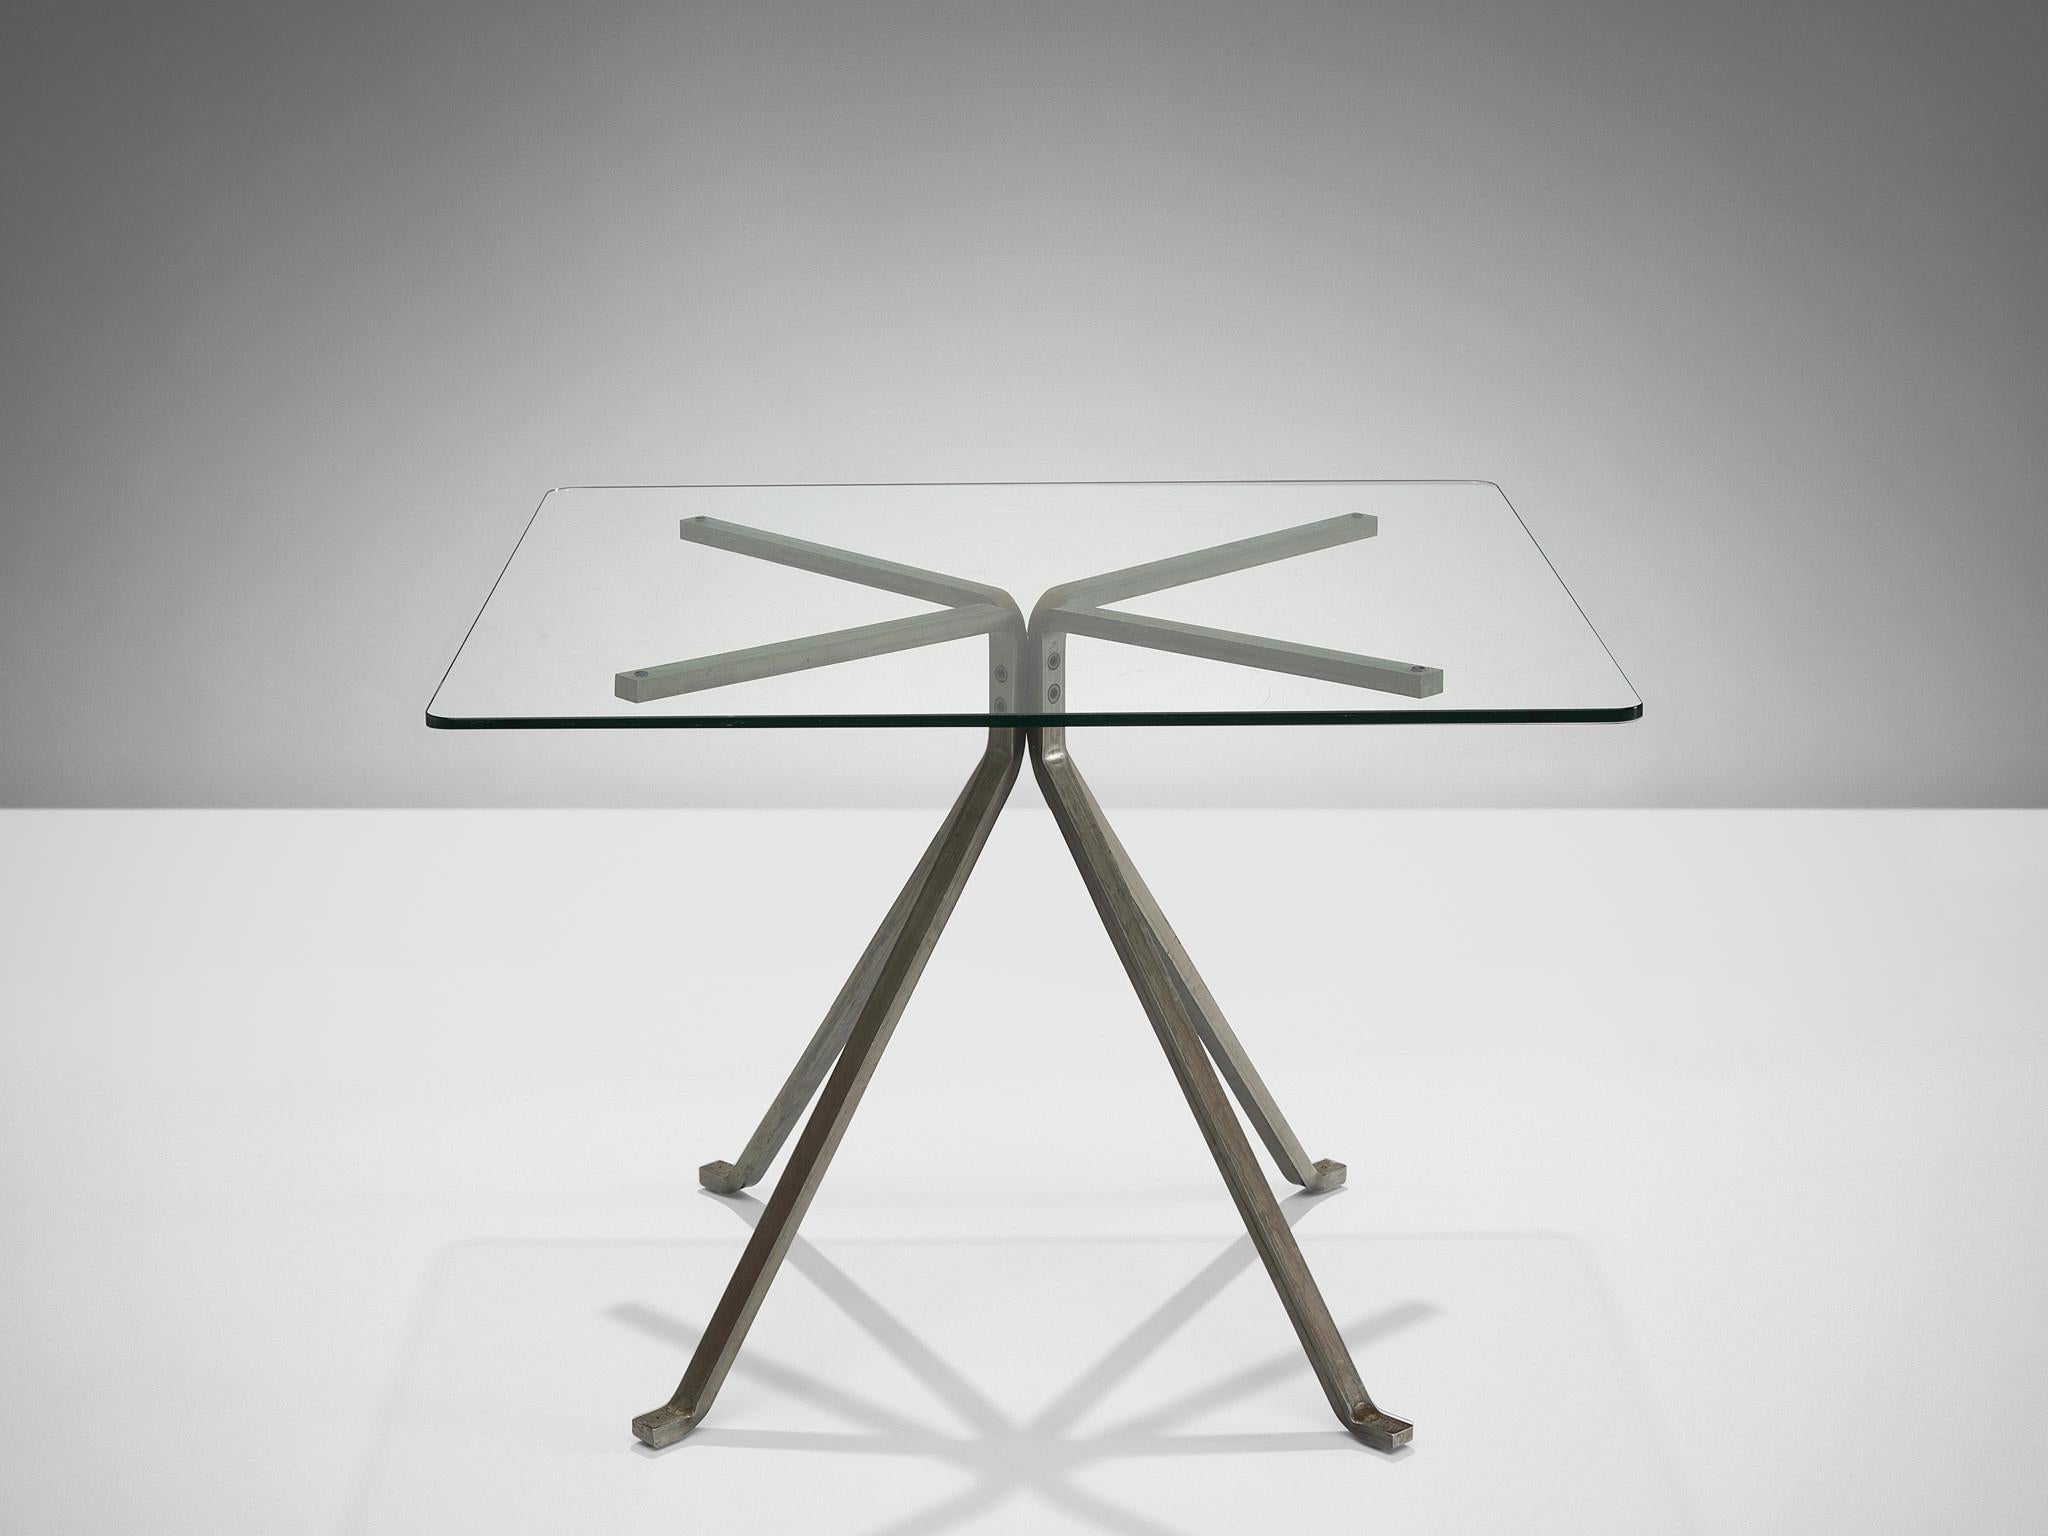 Enzo Mari pour Driade, table d'appoint 'Cugino', verre, acier brossé, Italie, 1973.

Cette table se caractérise par une construction claire. La base se compose de quatre pieds effilés exécutés en acier noir anthracite qui maintiennent le plateau en